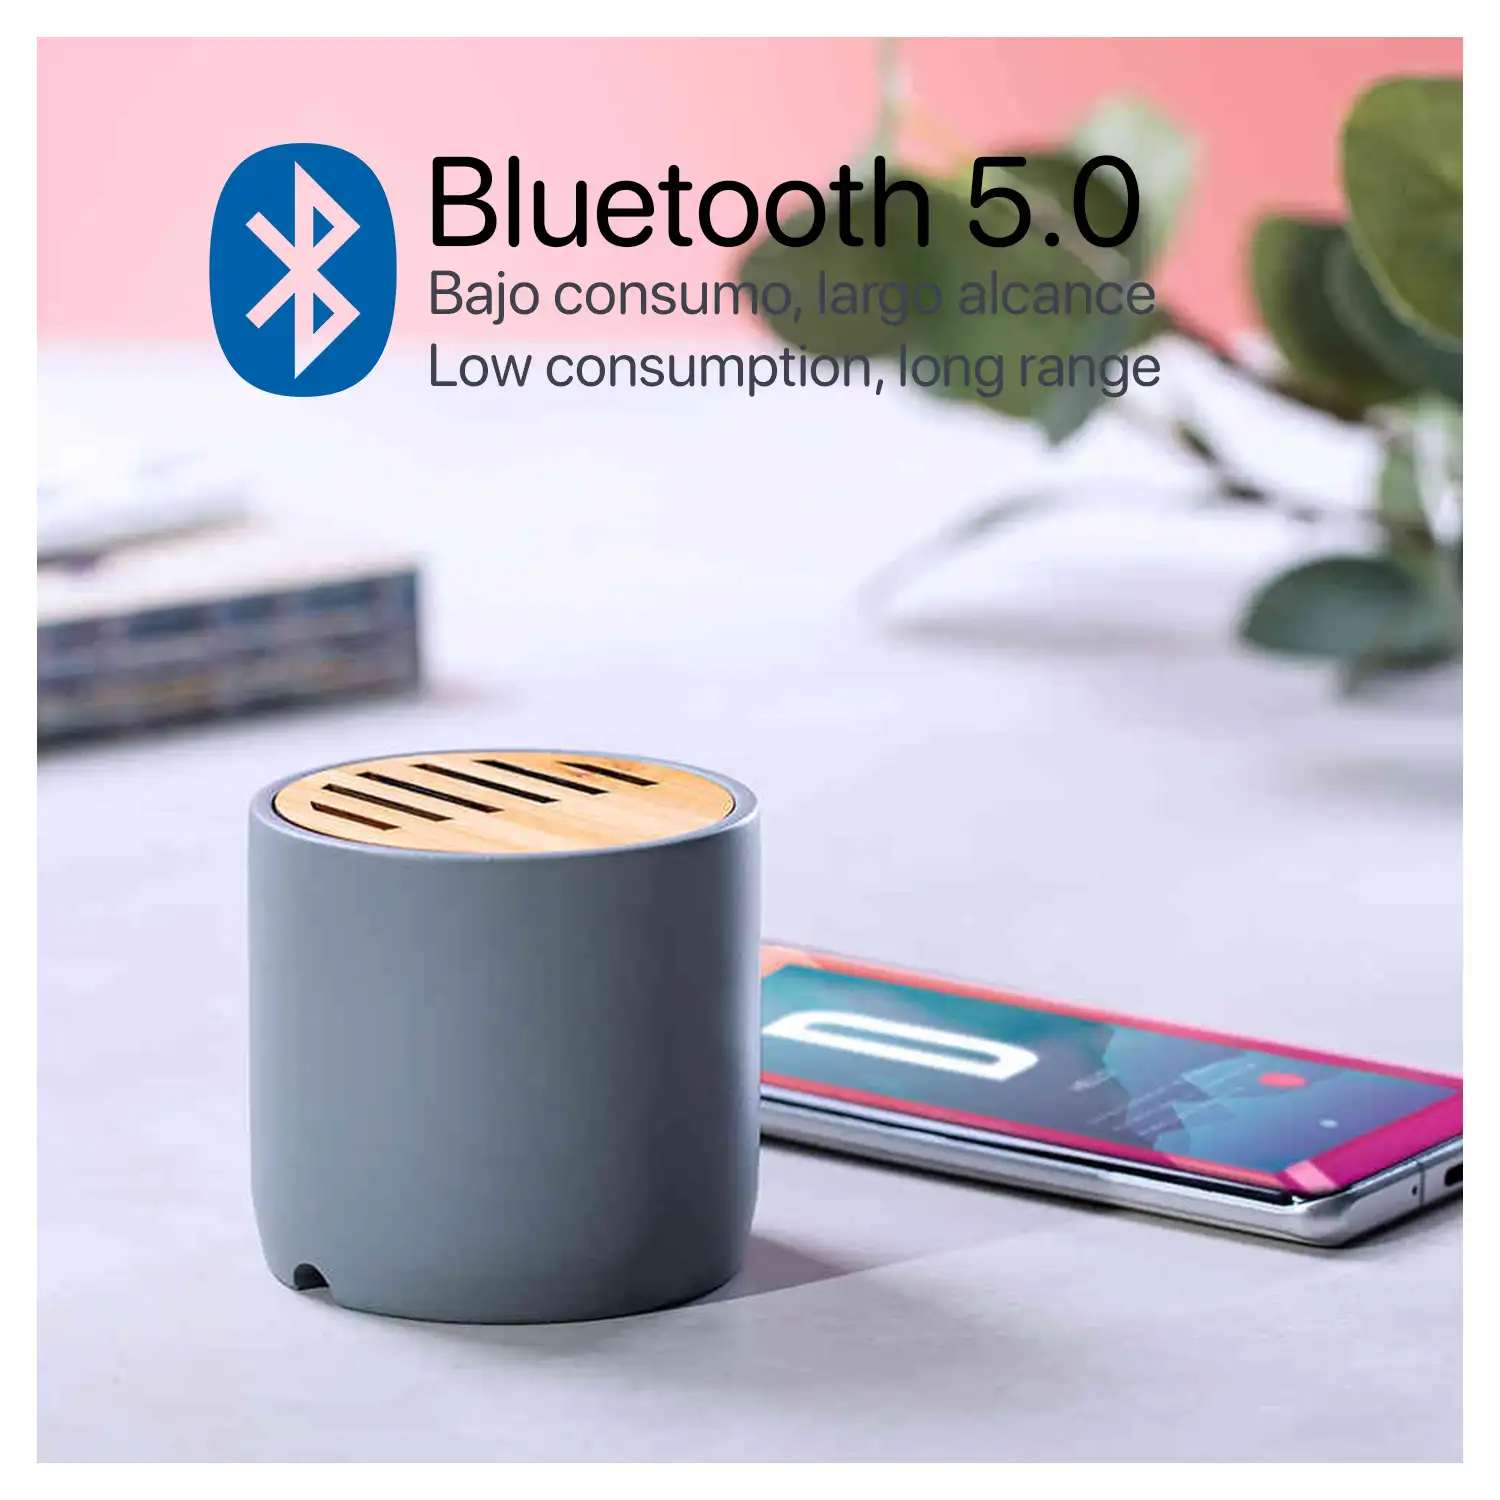 Altavoz Piler Bluetooth 5.0 fabricado en cemento y bambú. Tamaño compacto, 3W.